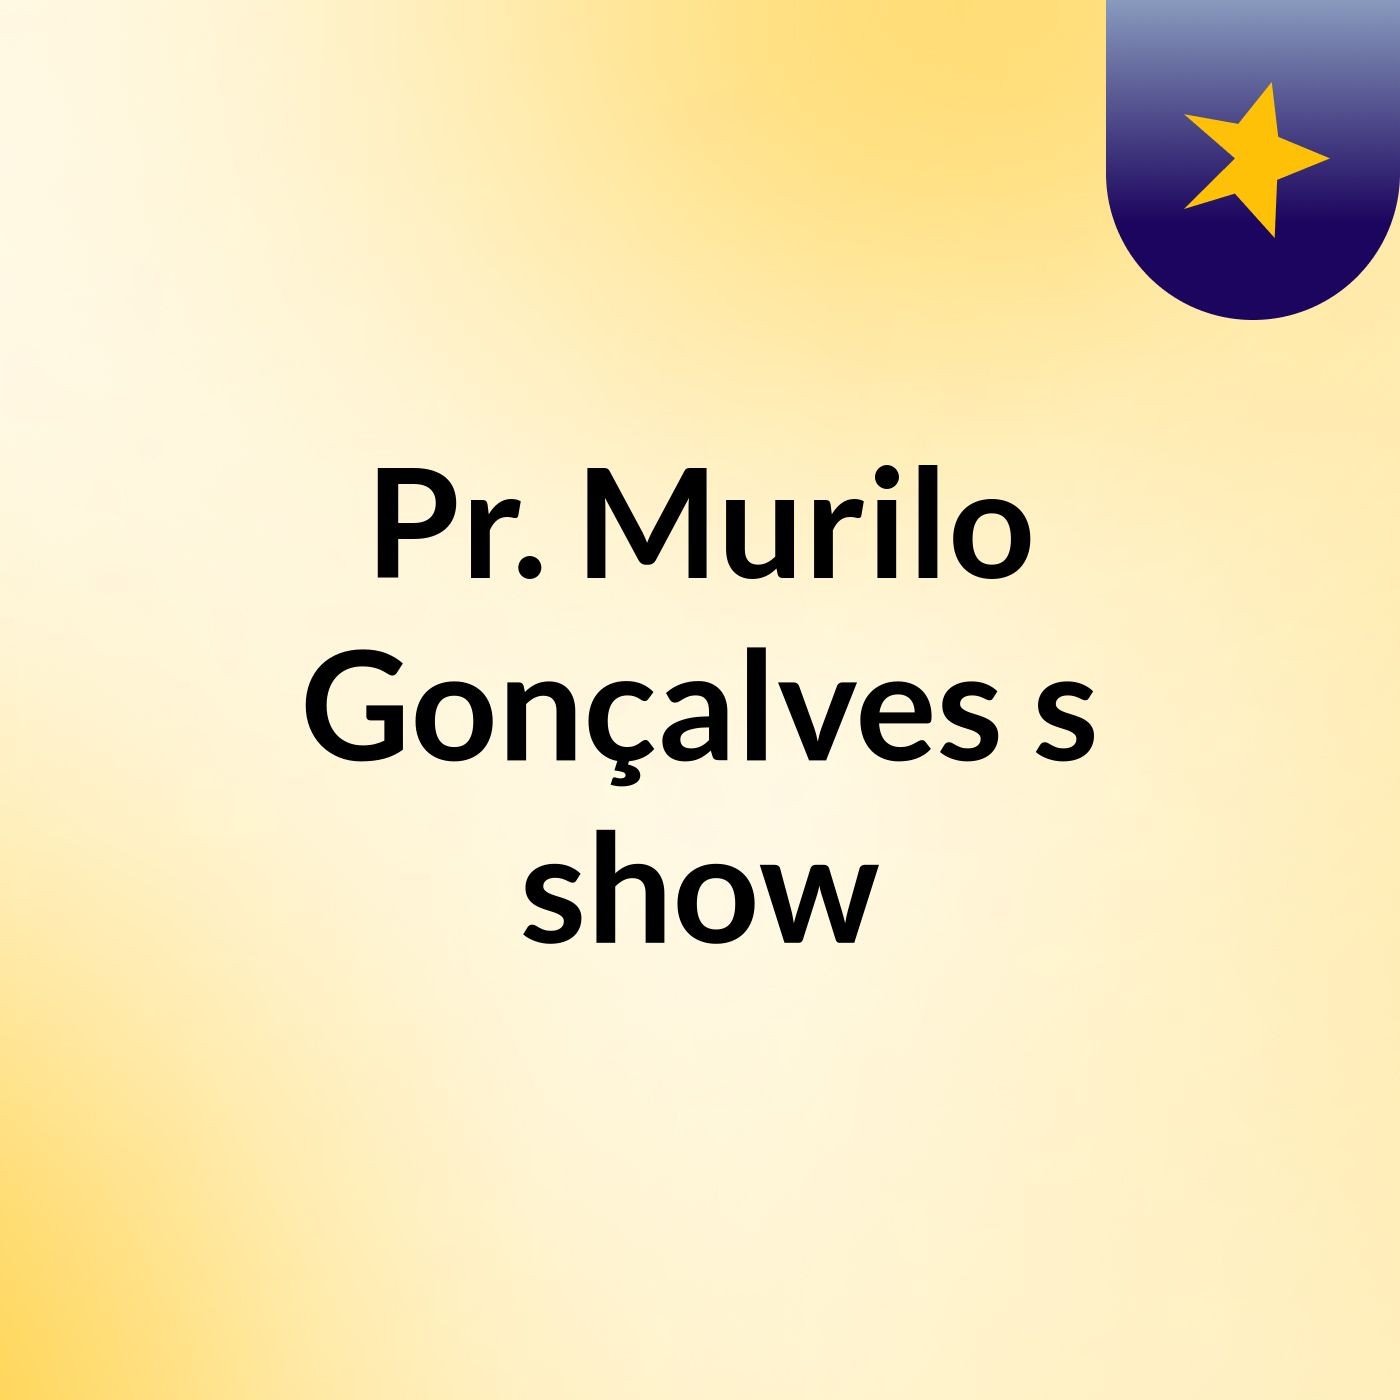 Pr. Murilo Gonçalves's show